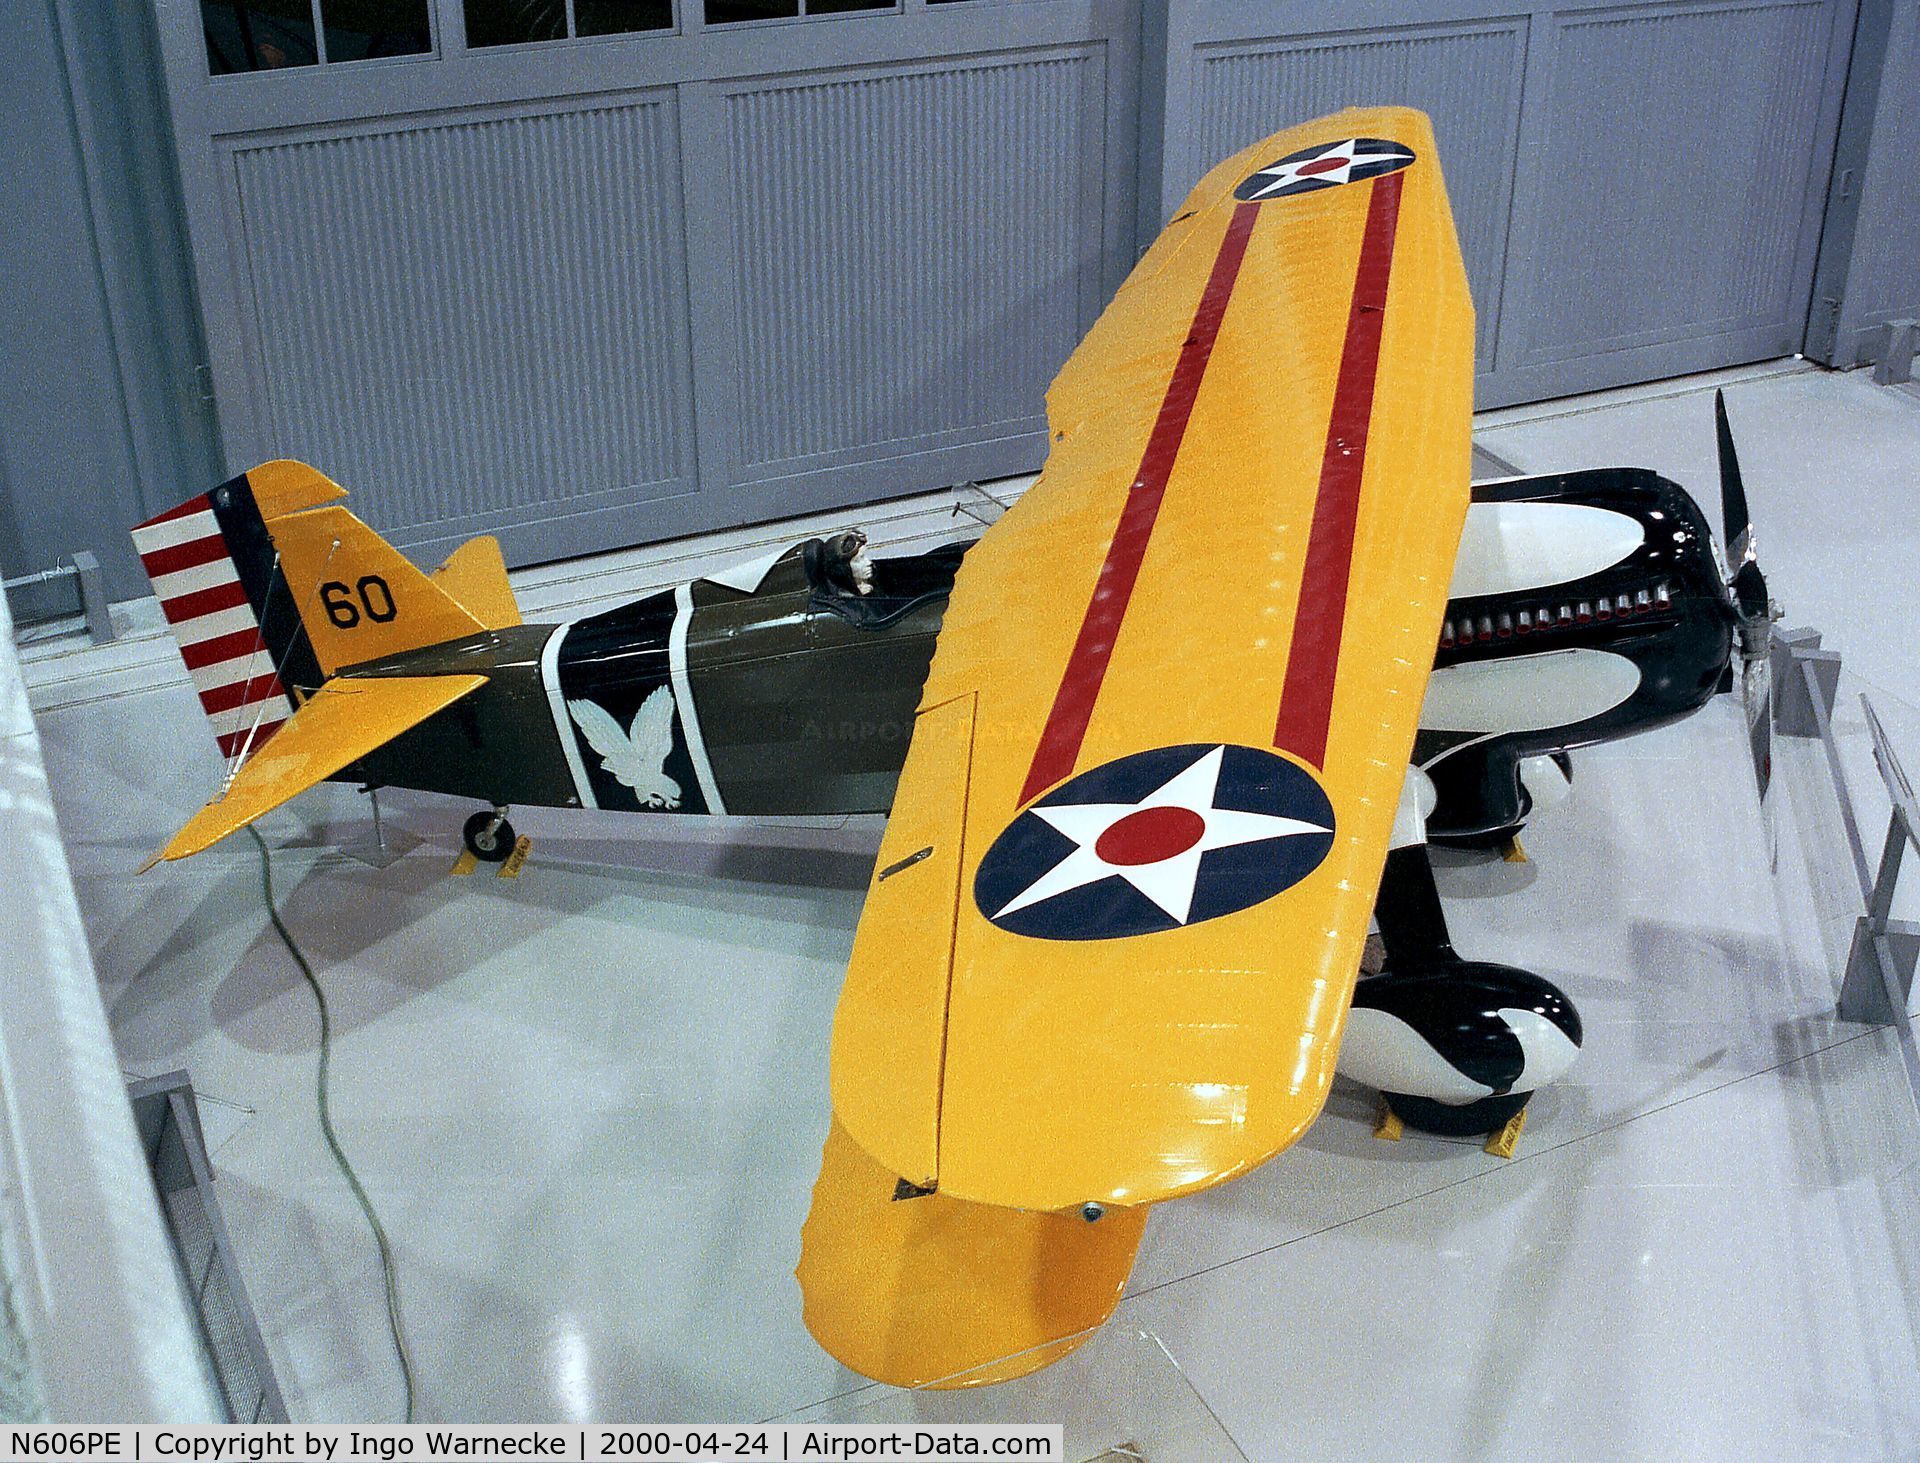 N606PE, 1992 Curtiss P-6E Hawk Replica C/N 32-260, Curtiss (Rosnick) P-6E Hawk replica at the EAA-Museum, Oshkosh WI